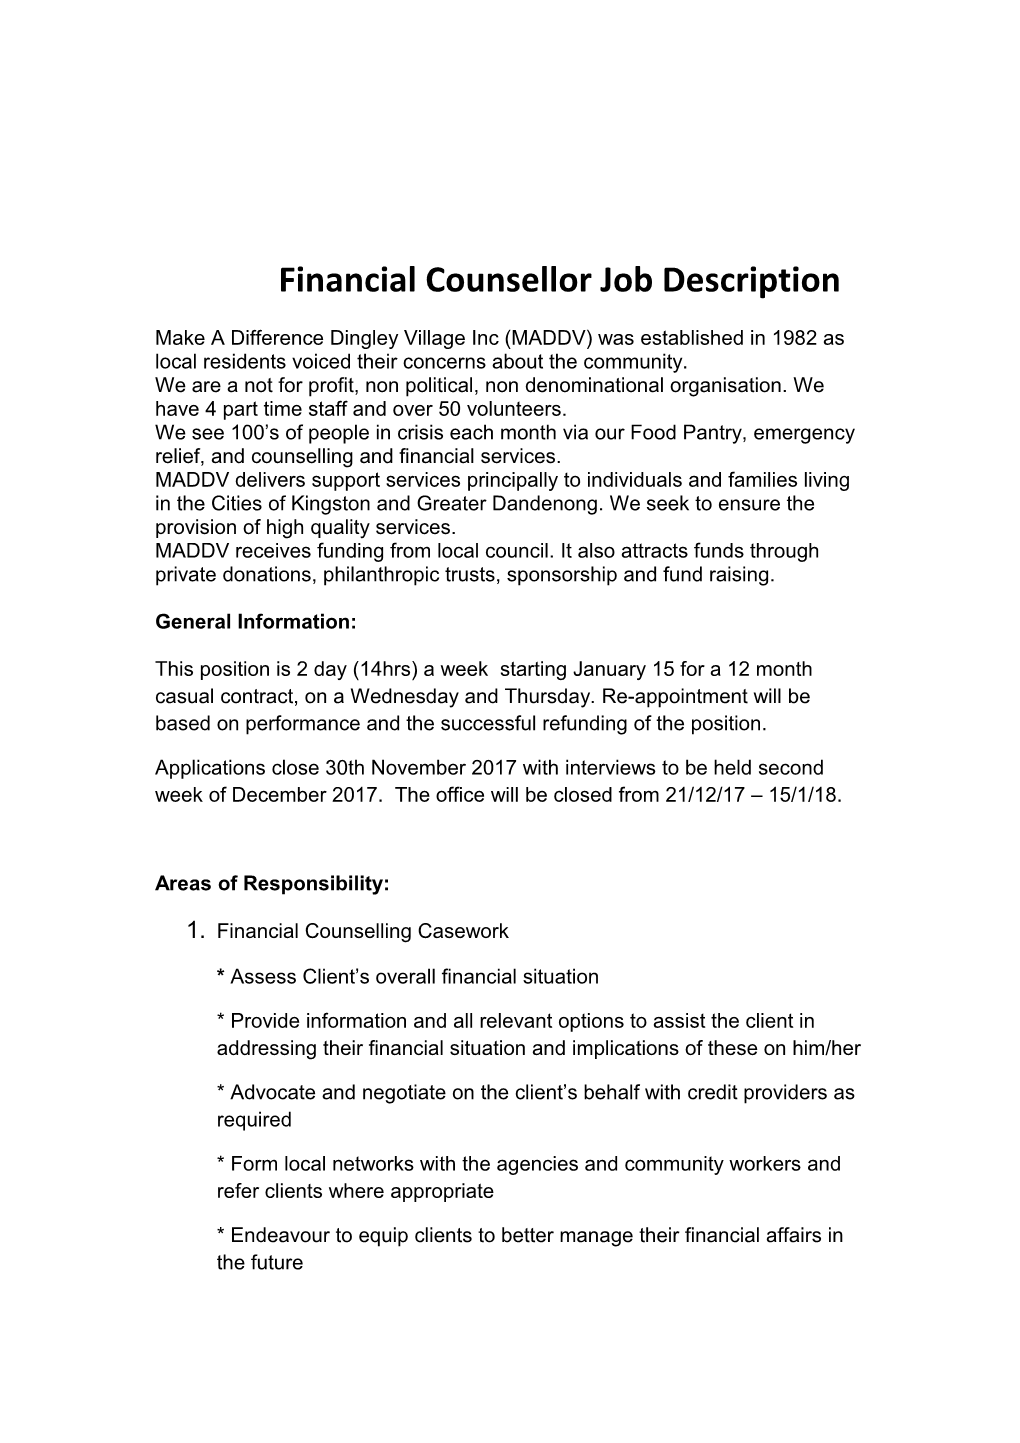 Financial Counsellor Job Description